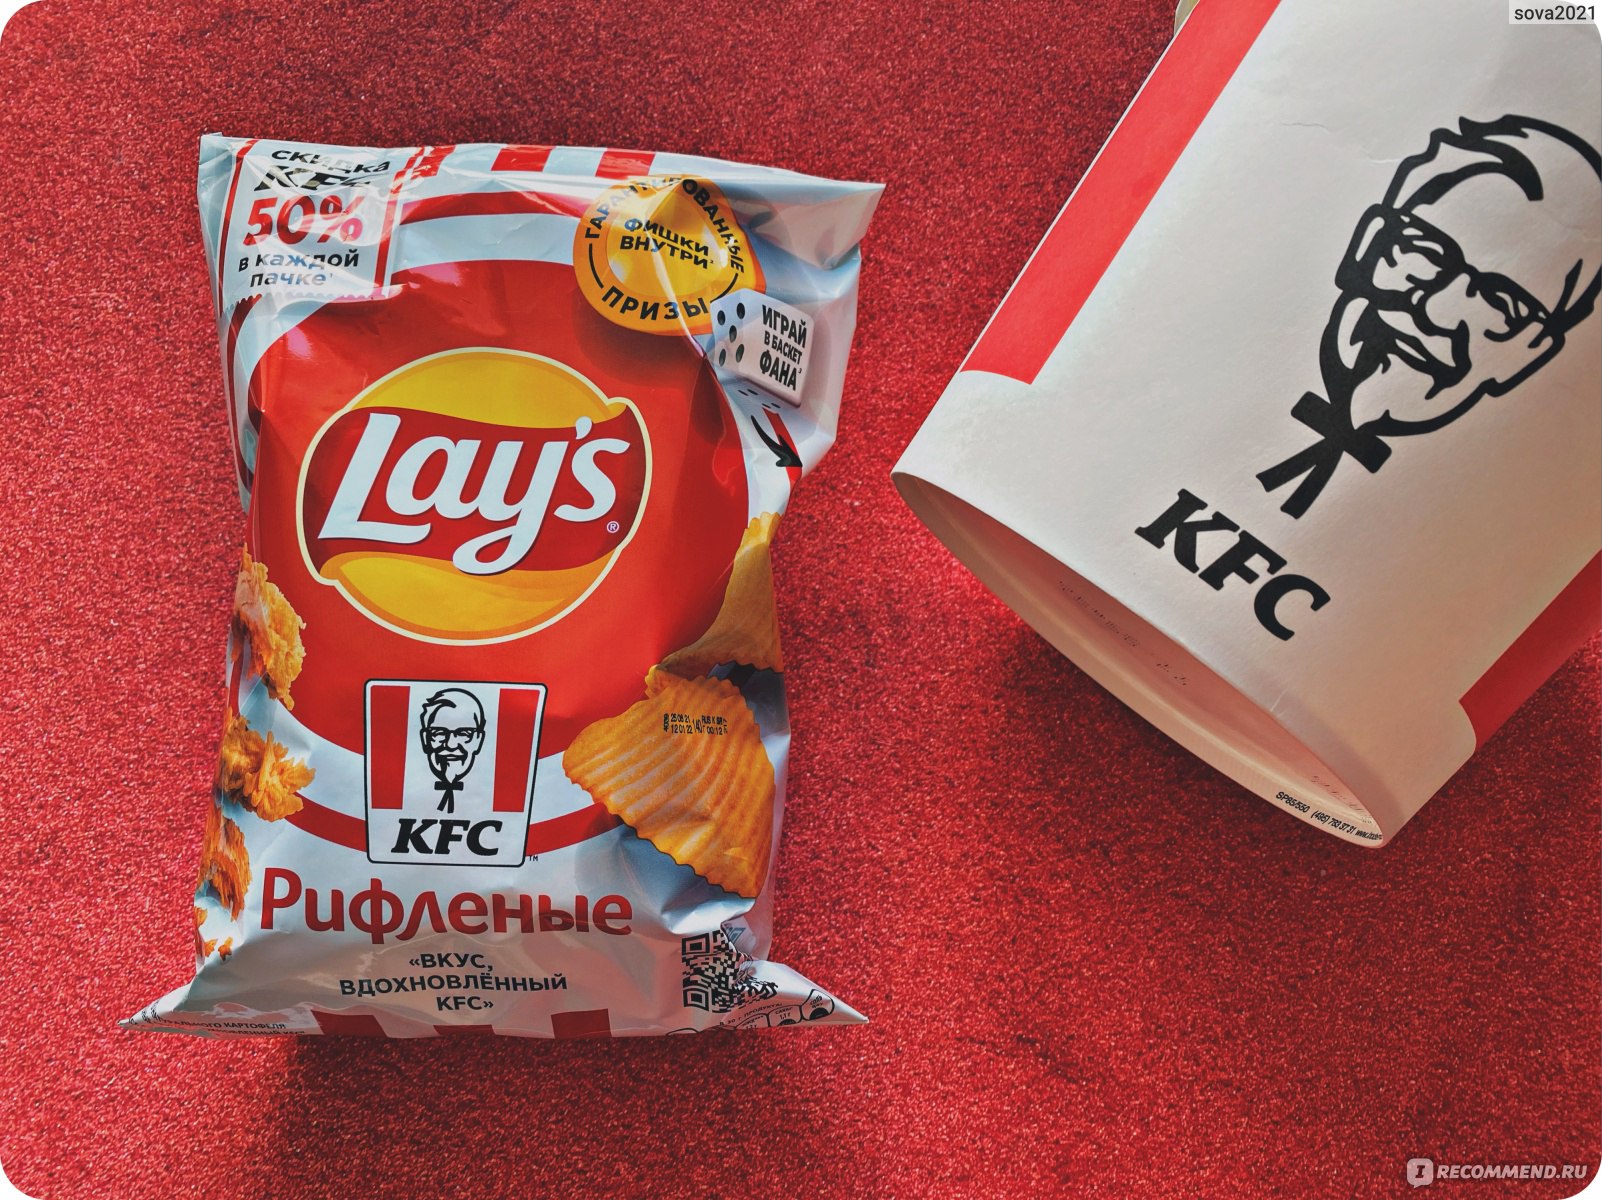 Чипсы из натурального картофеля рифлёные Lays «Вкус, вдохновлённый KFC» фото